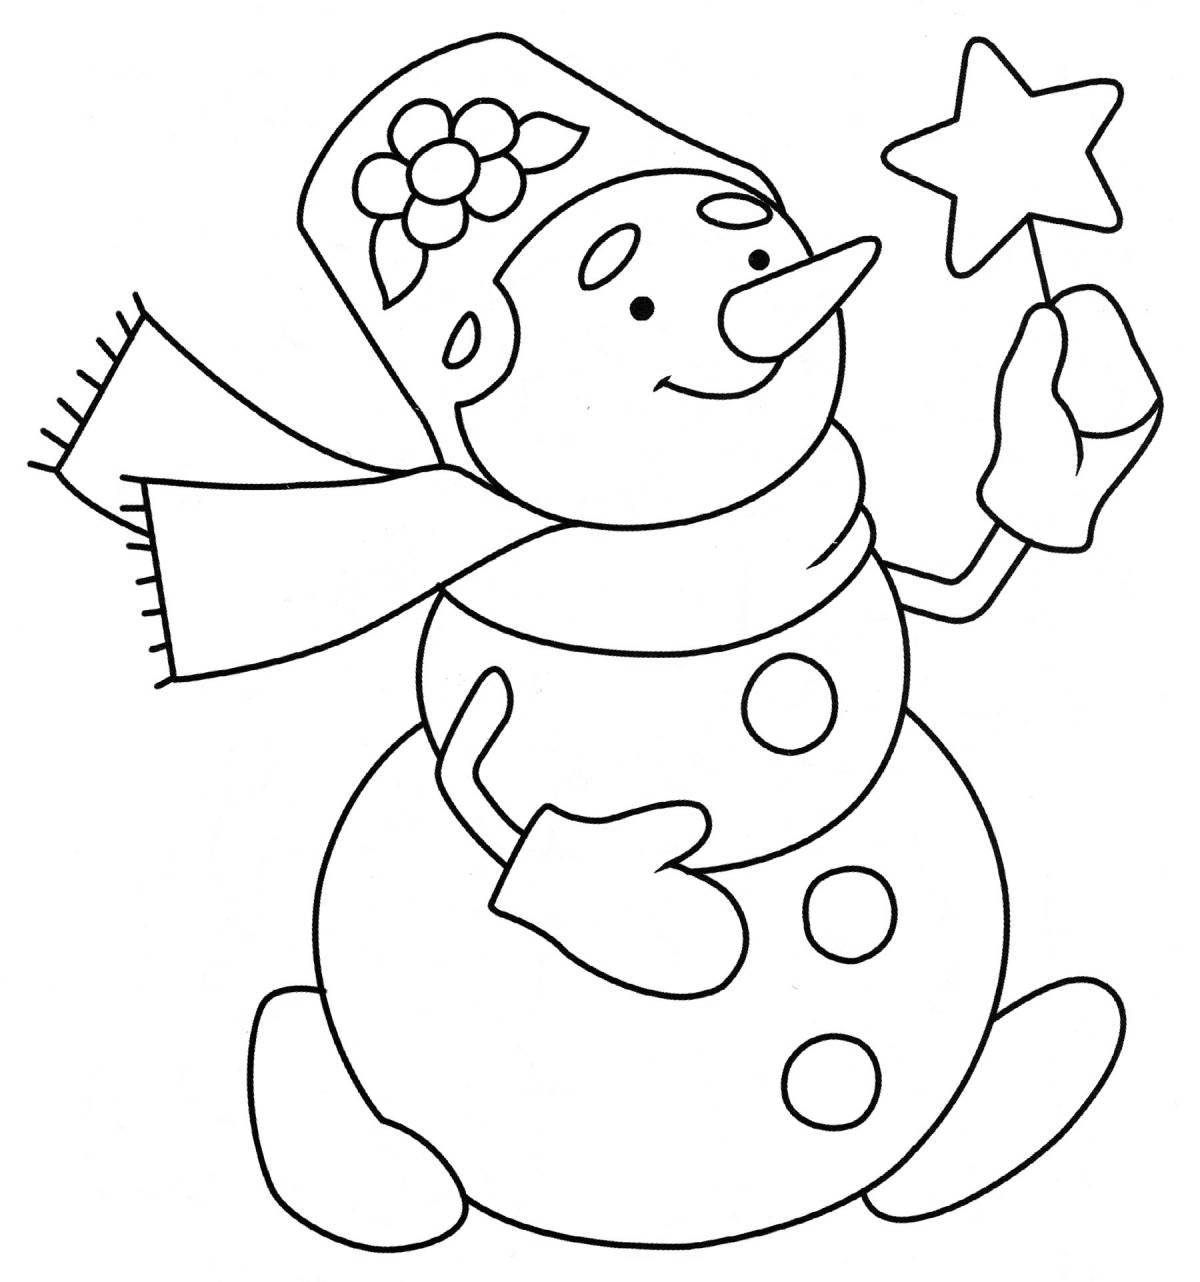 Яркая раскраска снеговик для детей